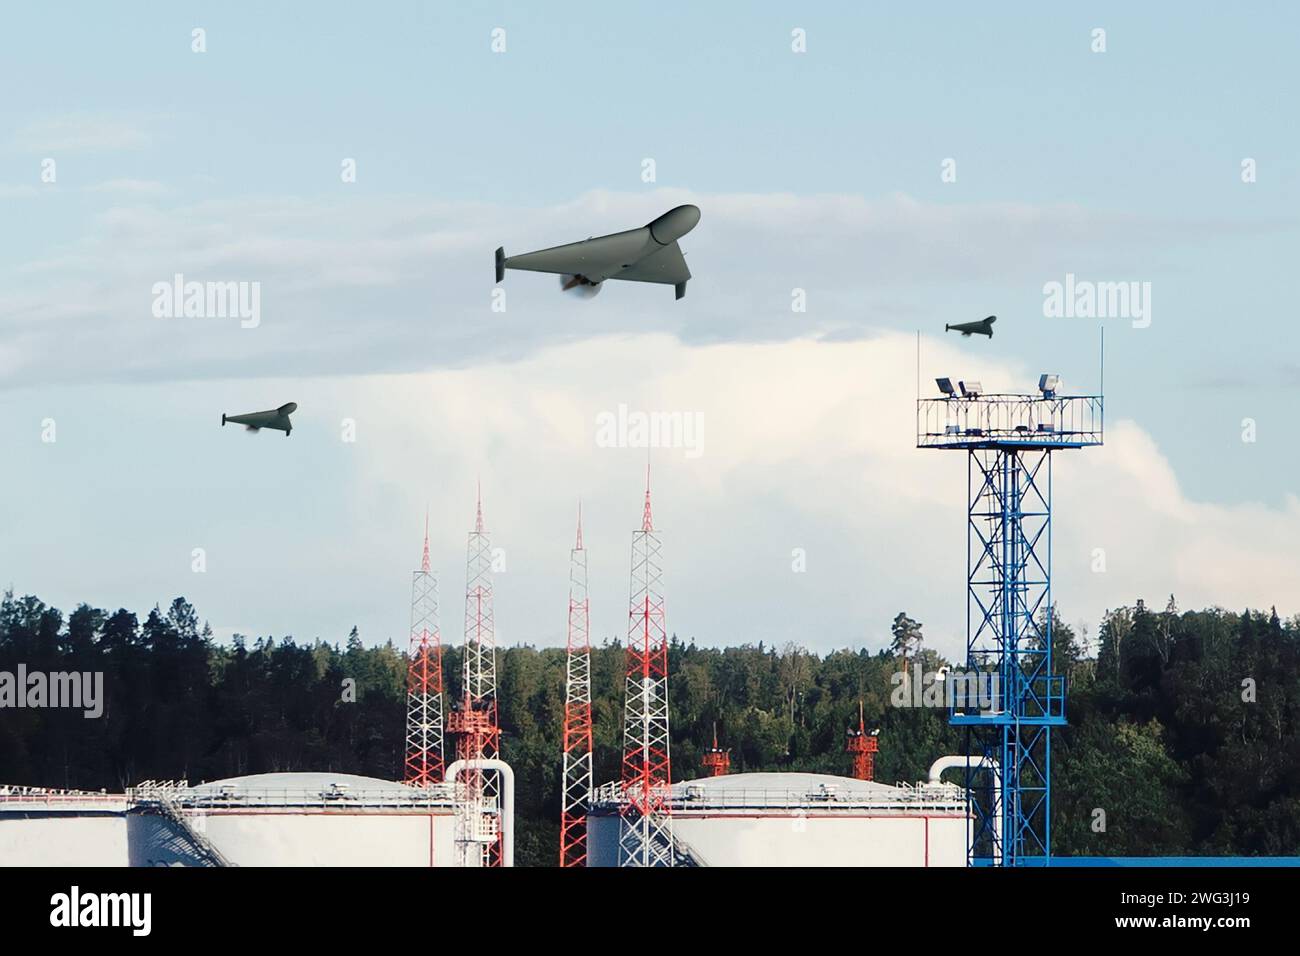 Un groupe de drones militaires survolent des réservoirs de raffinerie de pétrole, attaque aérienne. Banque D'Images